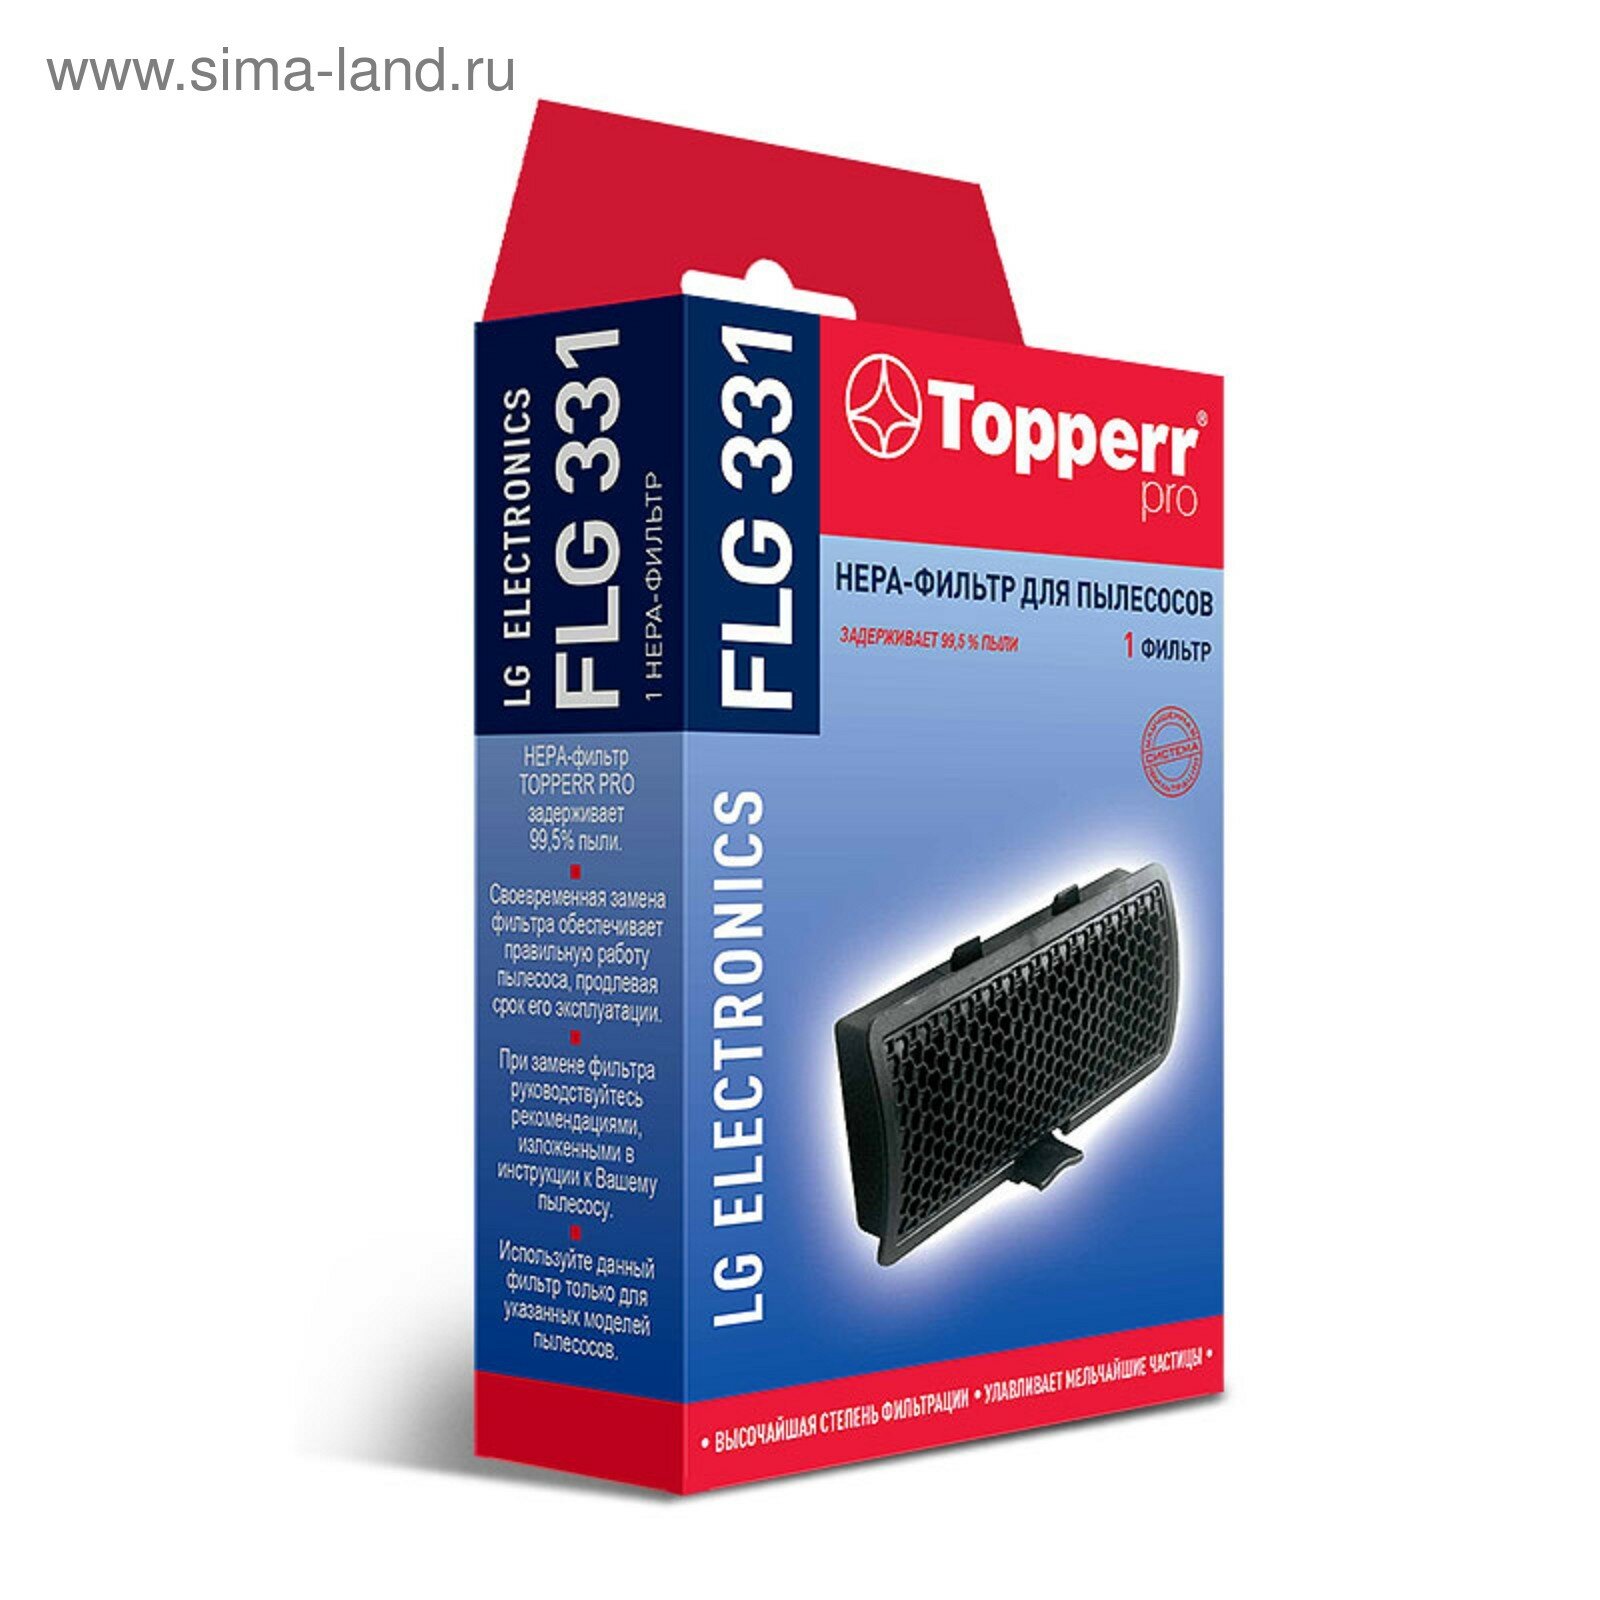 HEPA фильтр FLG 331 для пылесосов LG